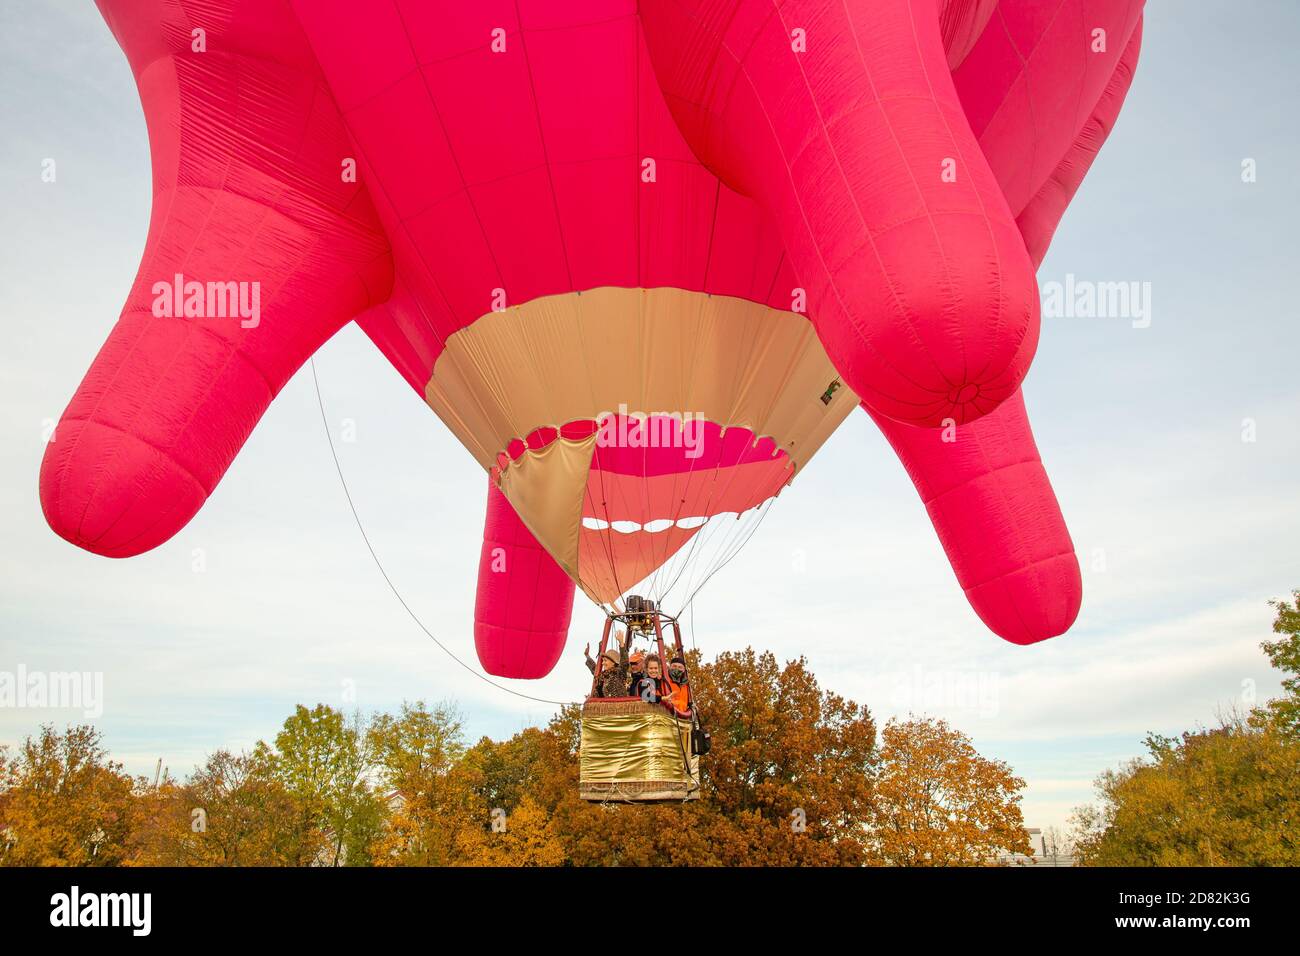 ‘Flying Udder’ globo de aire caliente de la artista Barbara Anna Husar despegue desde la colina de Roter Berg en Viena, Austria, el día Nacional de Austria, 26 de octubre de 2020 Foto de stock